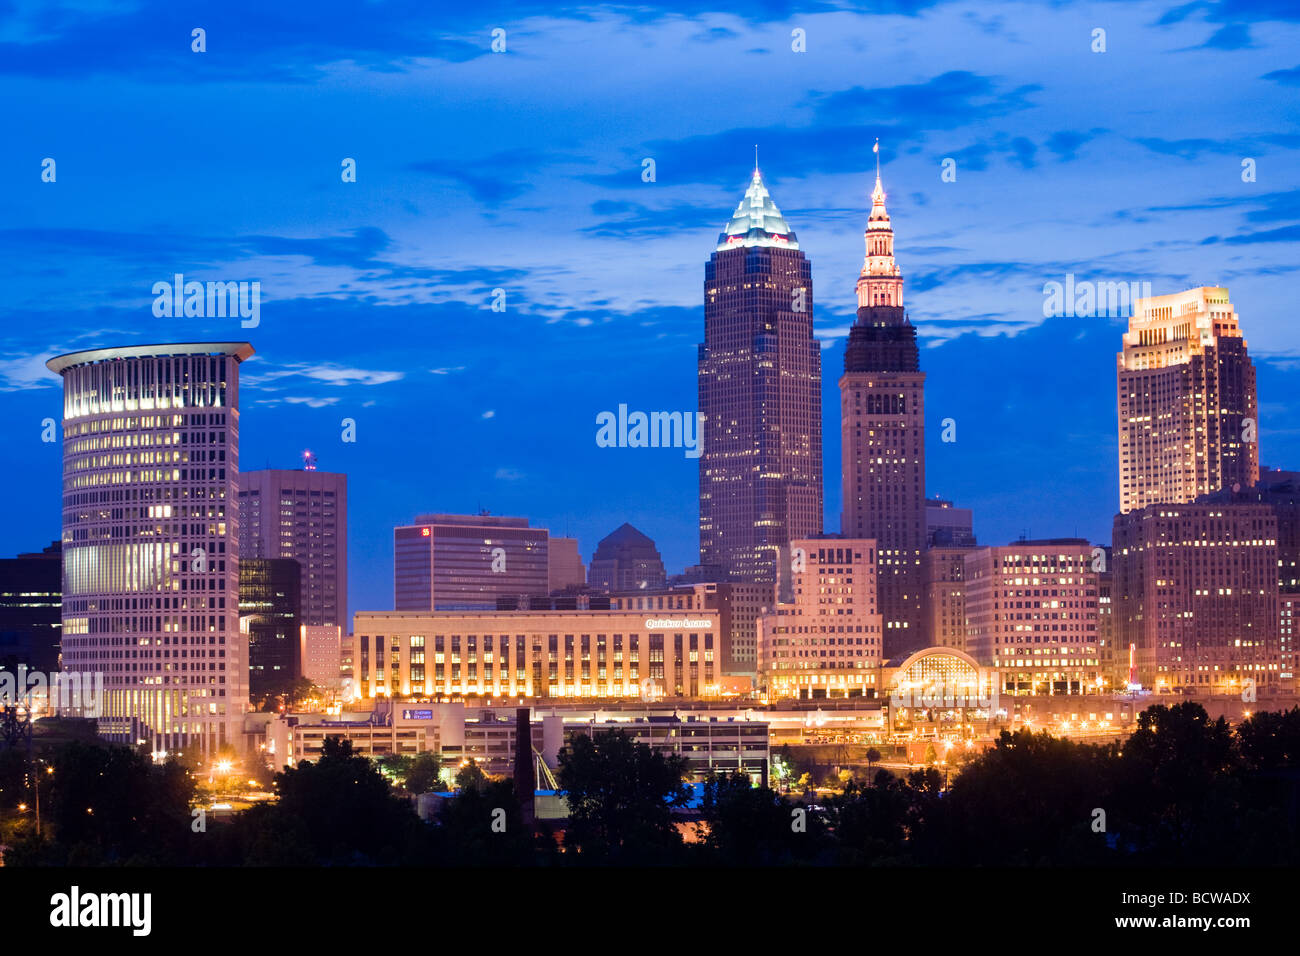 Dusk skyline of downtown Cleveland Ohio Stock Photo Alamy